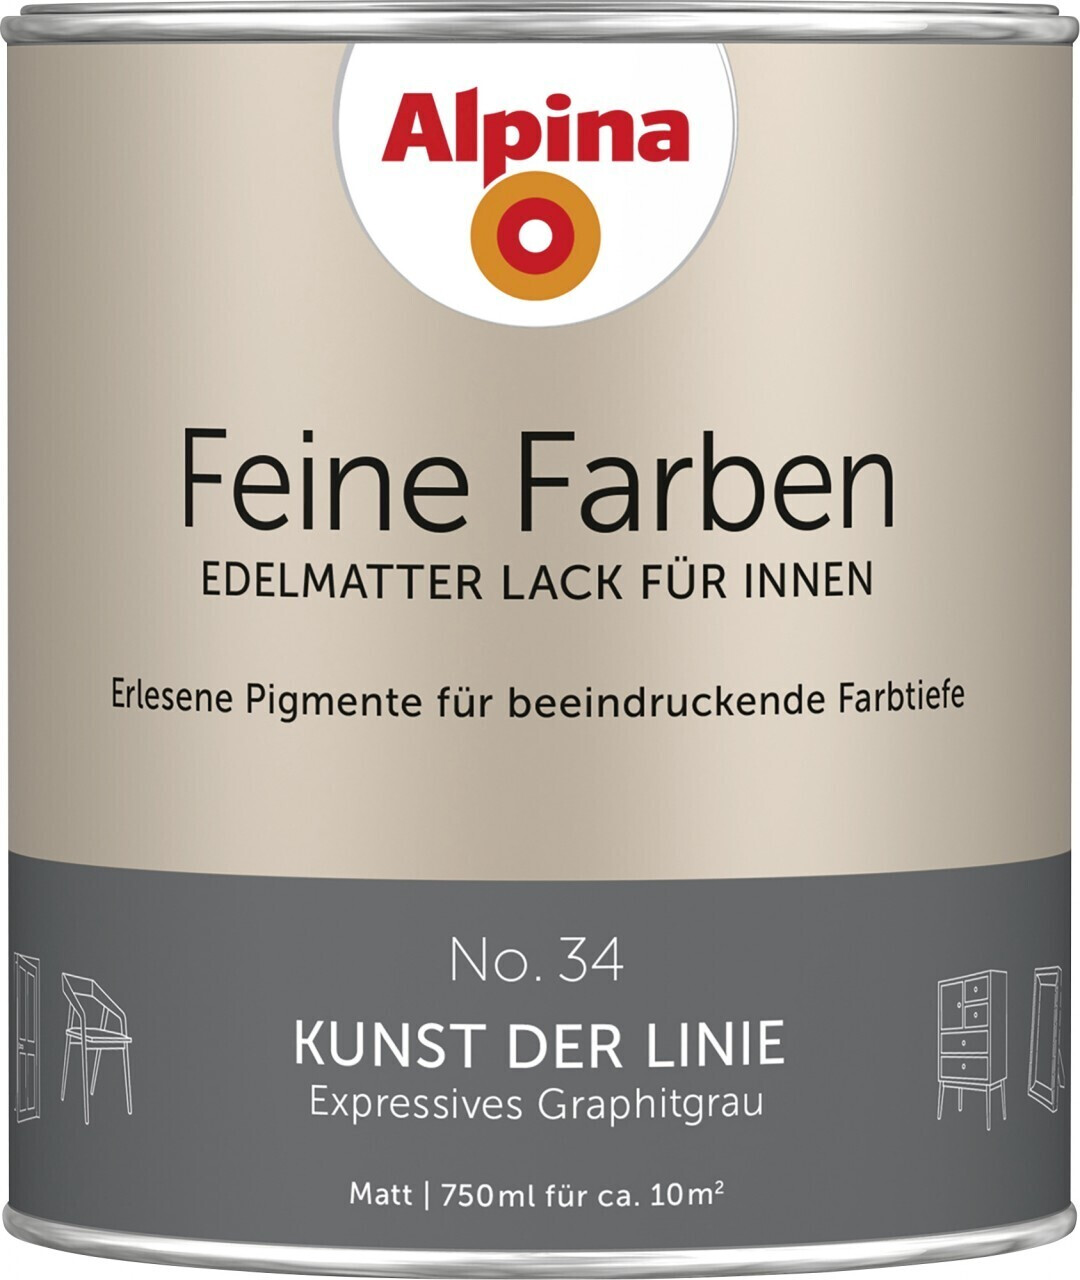 https://cdn.idealo.com/folder/Product/201708/8/201708858/s1_produktbild_max/alpina-feine-farben-edelmatter-lack-fuer-innen-no-34-kunst-der-linie-0-75l.jpg